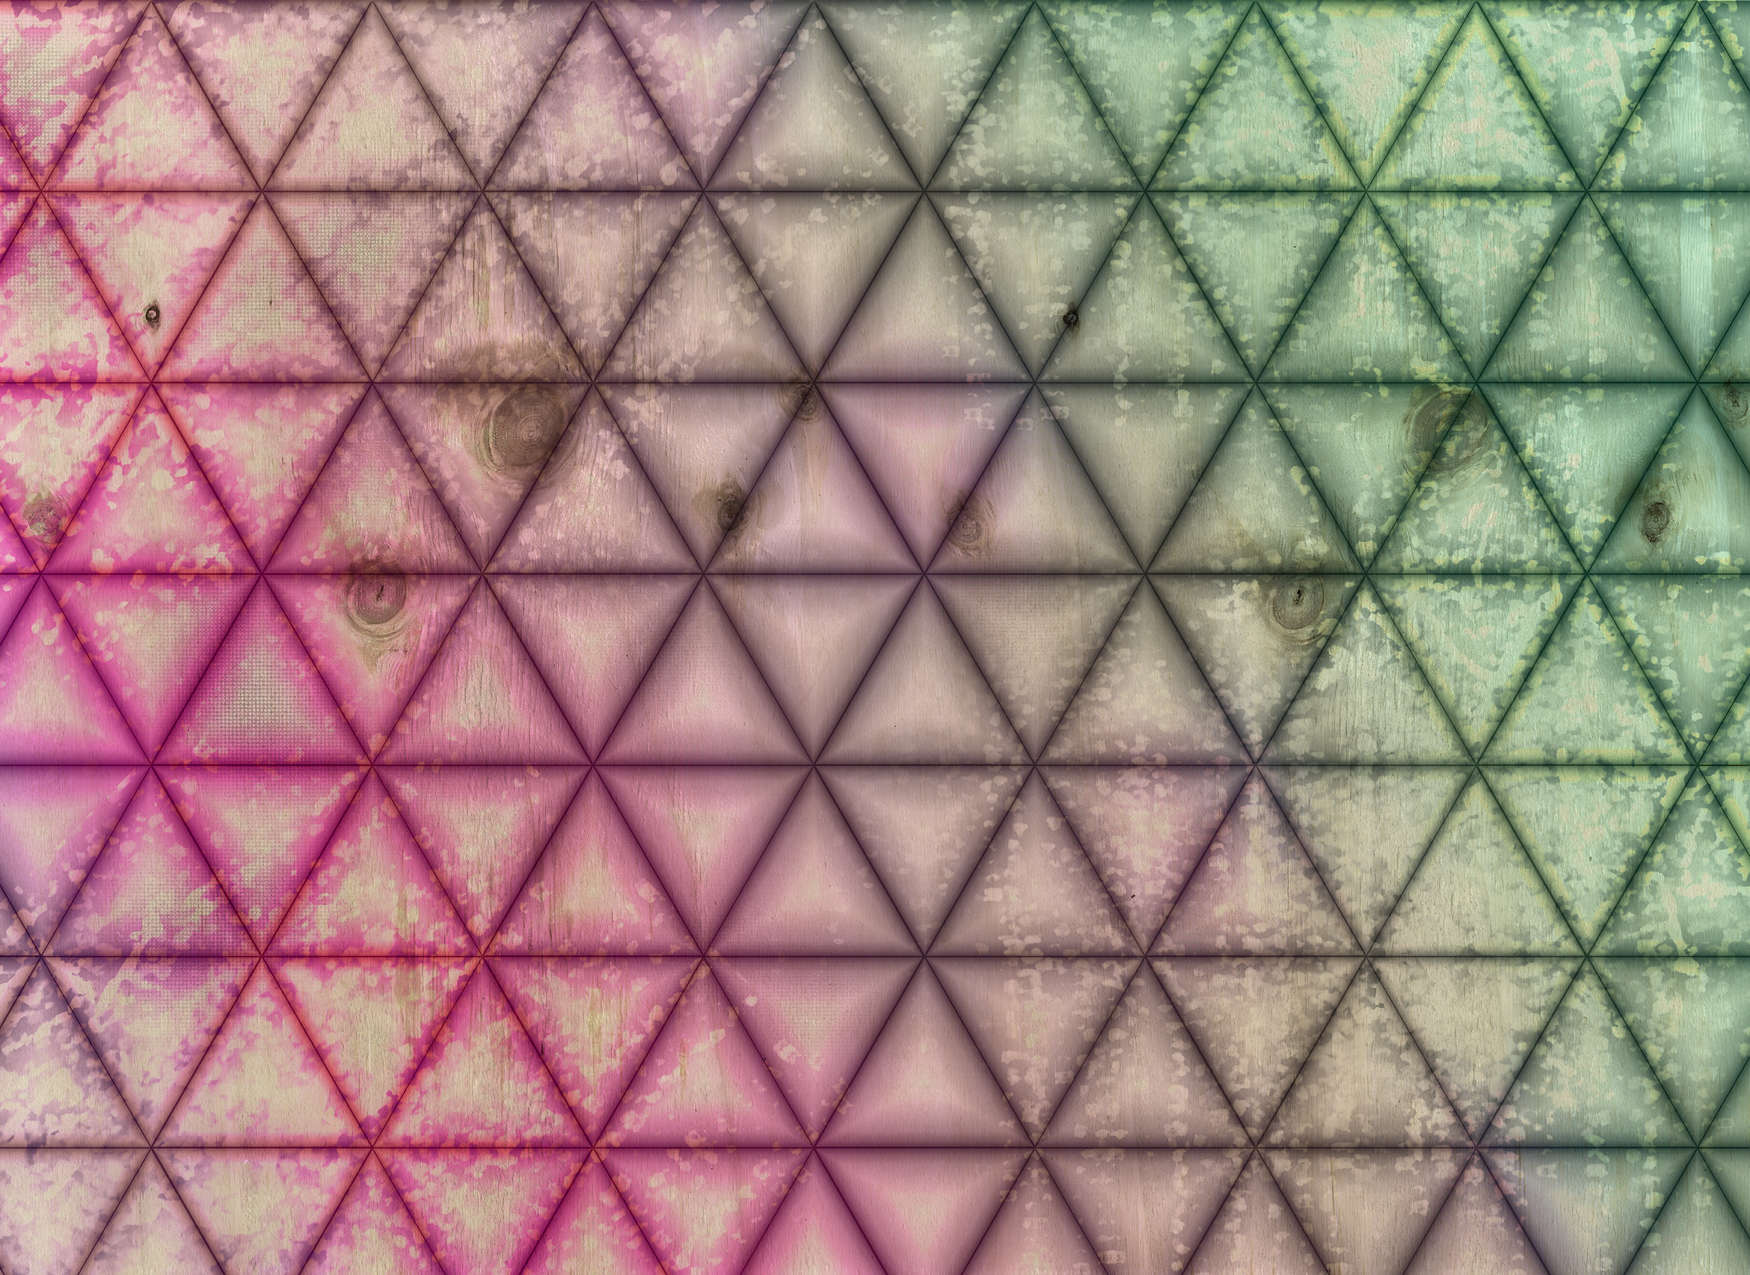             Mural de pared con diseño geométrico de triángulos con aspecto de madera - verde, rosa
        